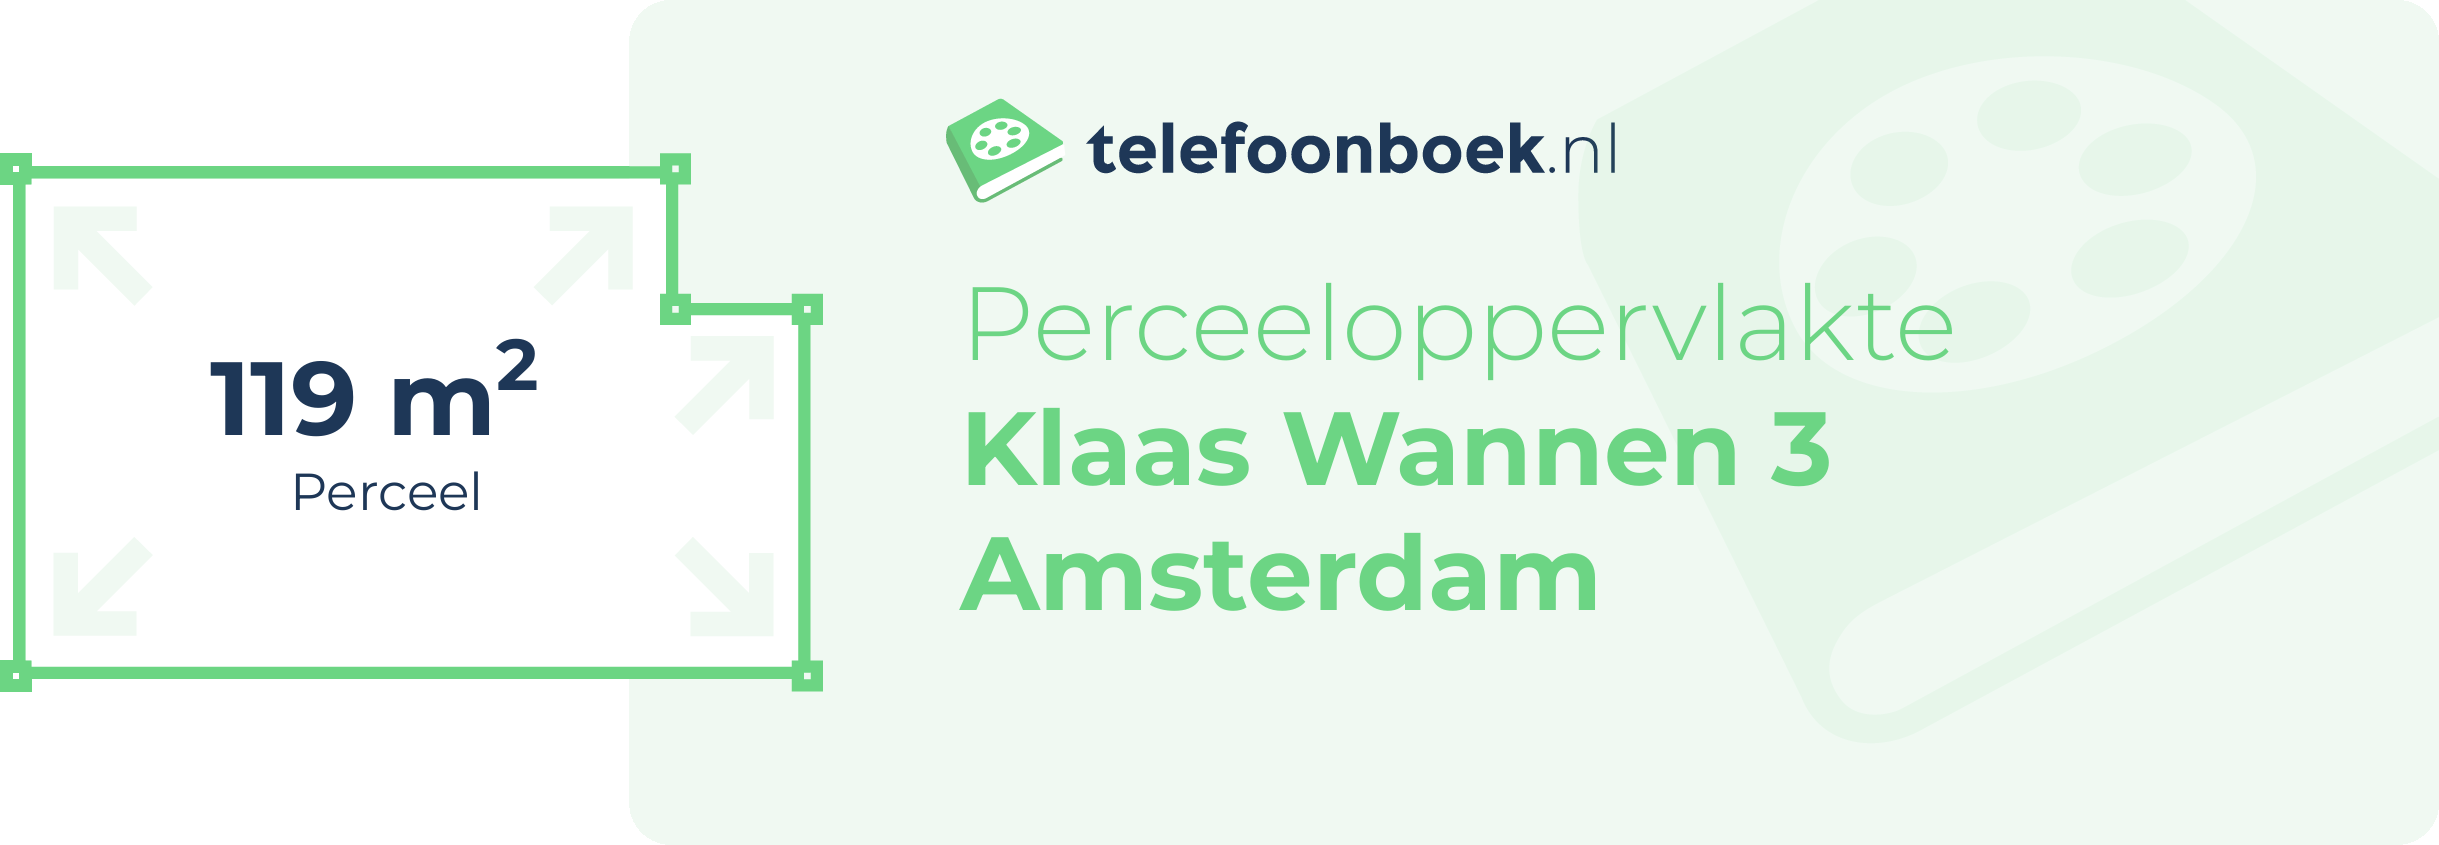 Perceeloppervlakte Klaas Wannen 3 Amsterdam